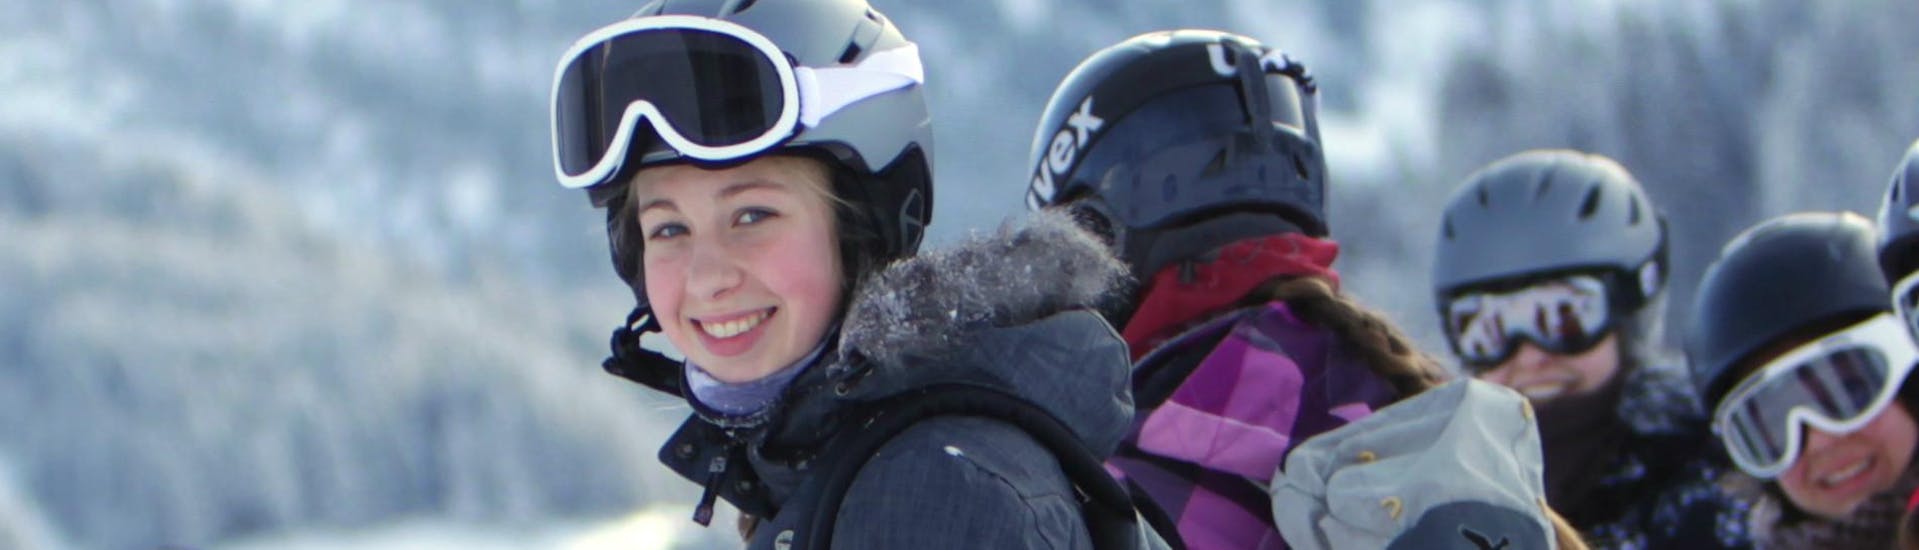 Lezioni di sci per bambini a partire da 13 anni per tutti i livelli.